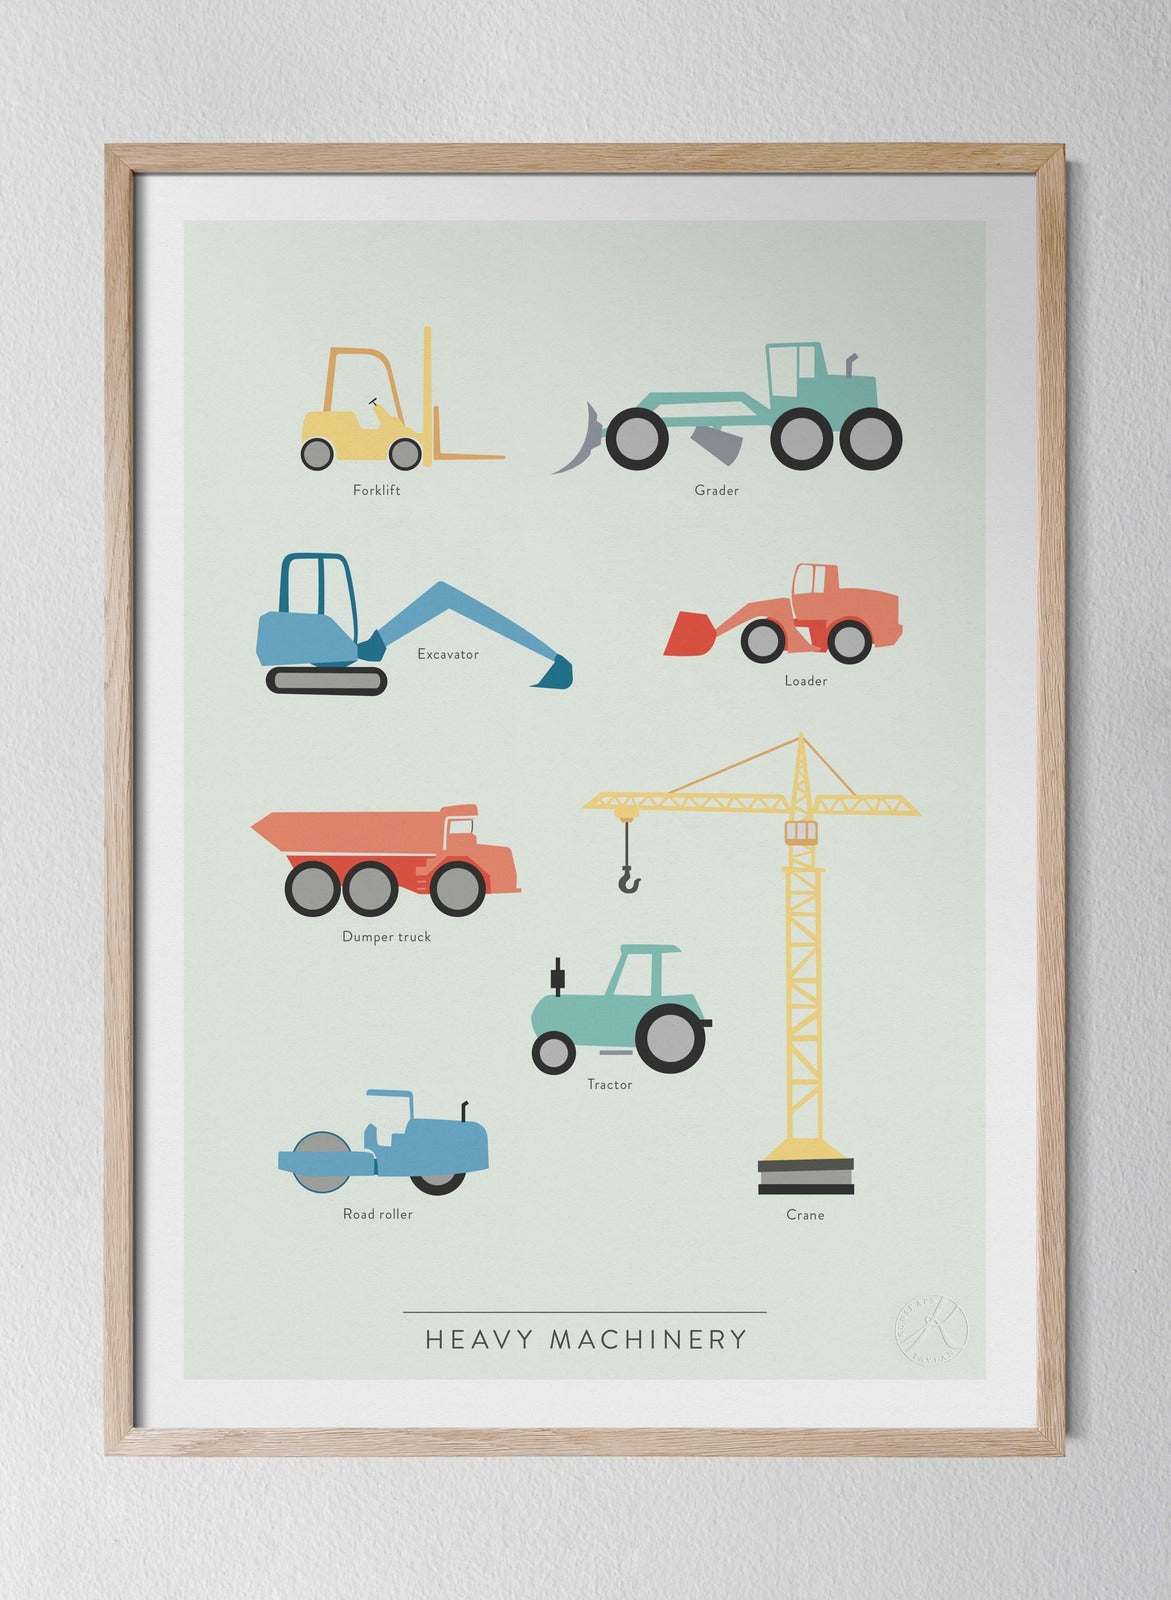 Heavy Machinery